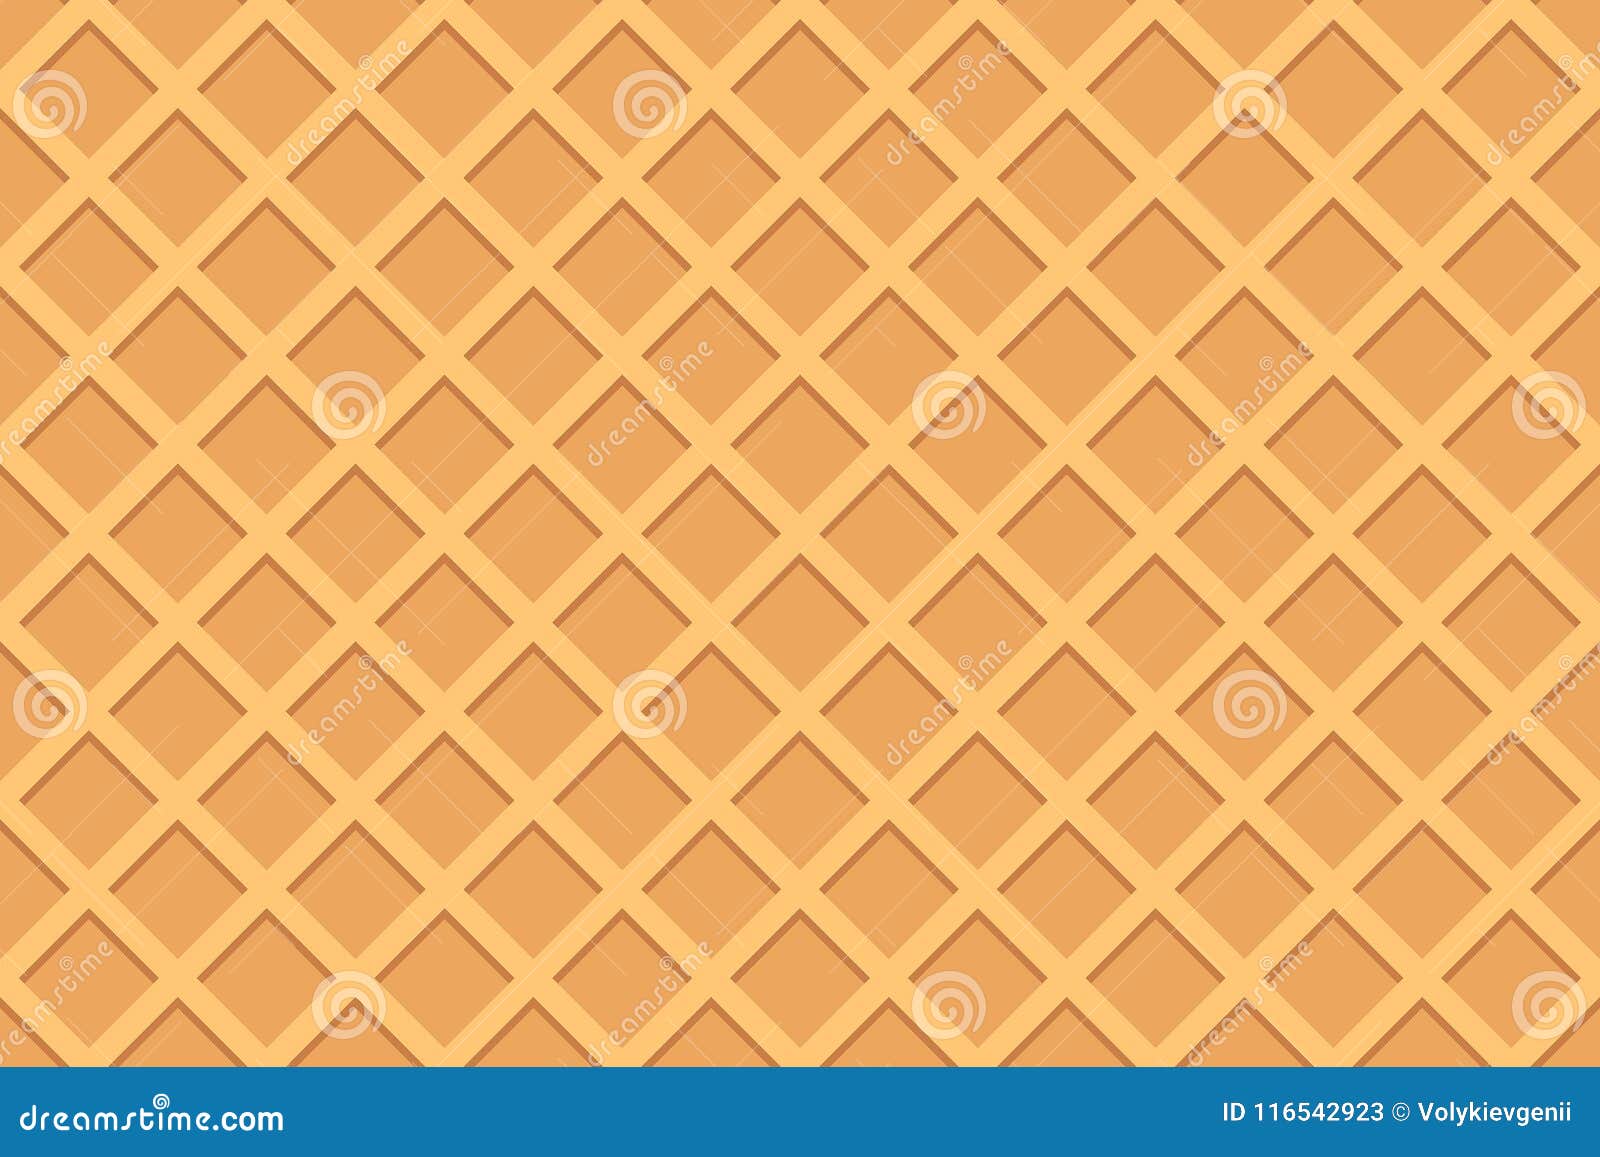 seamless pattern of waffle